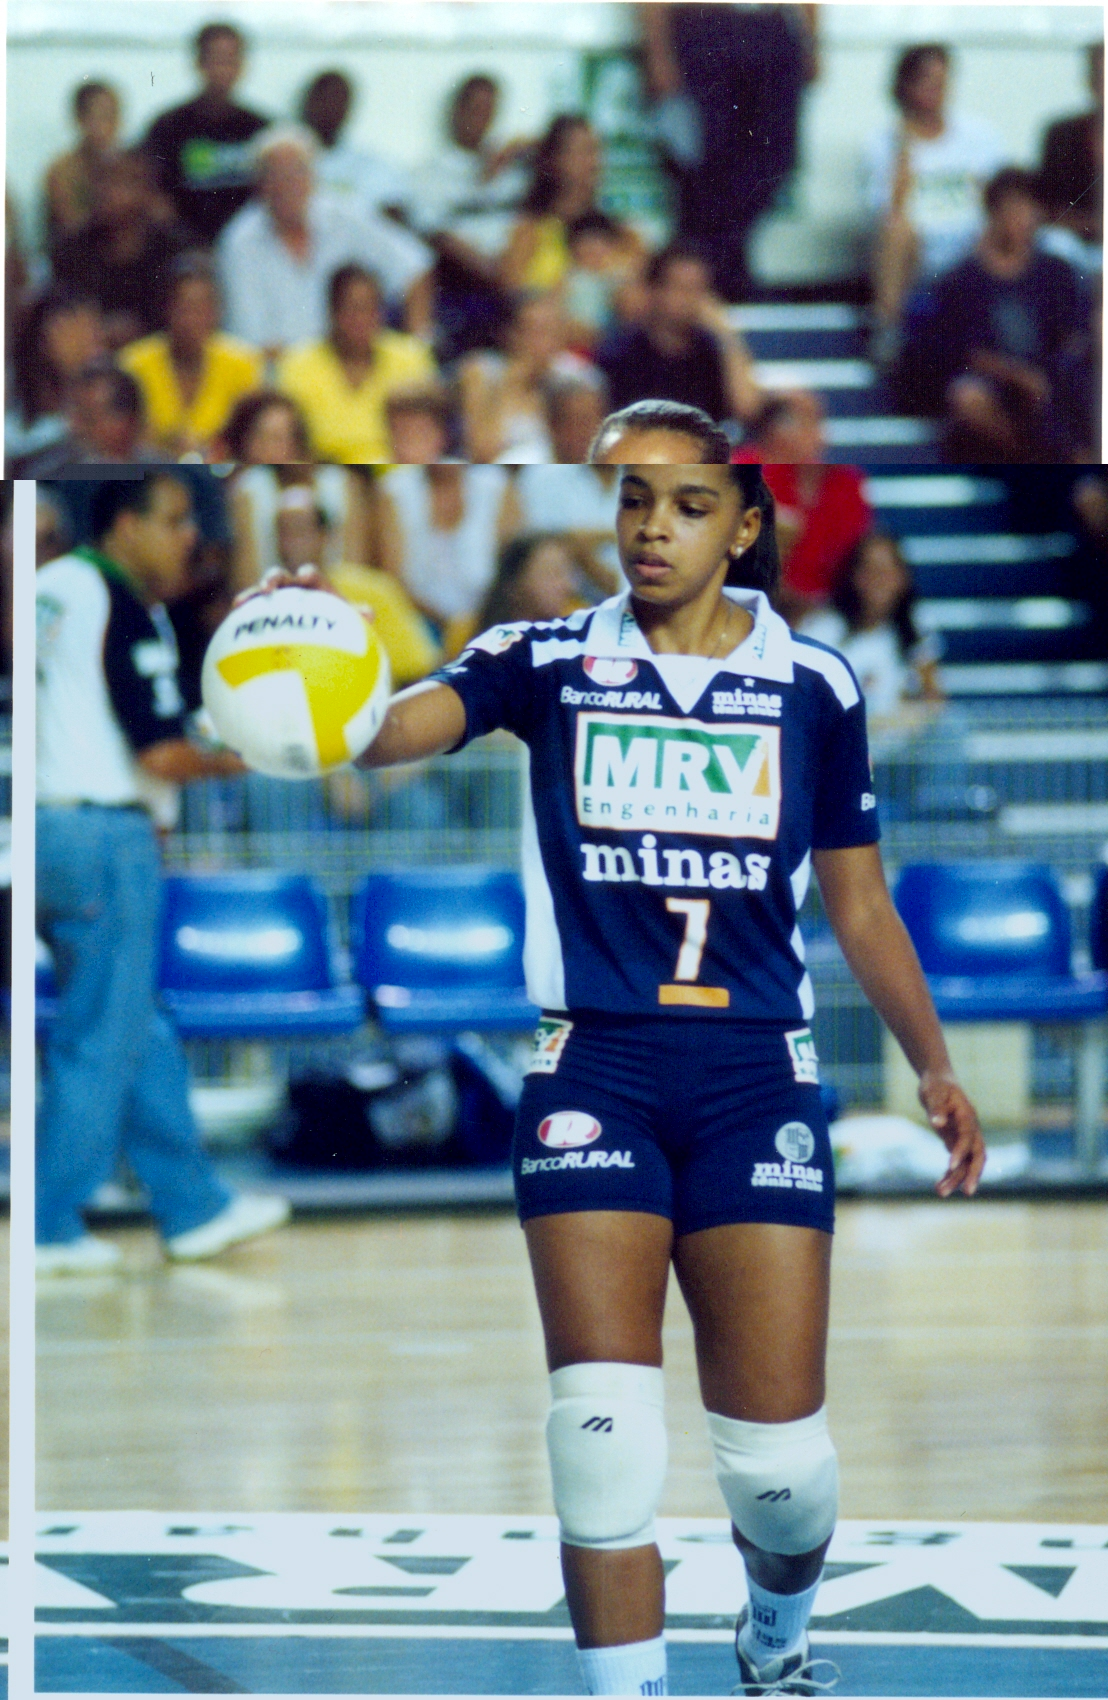 Minas conquista o tricampeonato da Copa Brasil de vôlei feminino